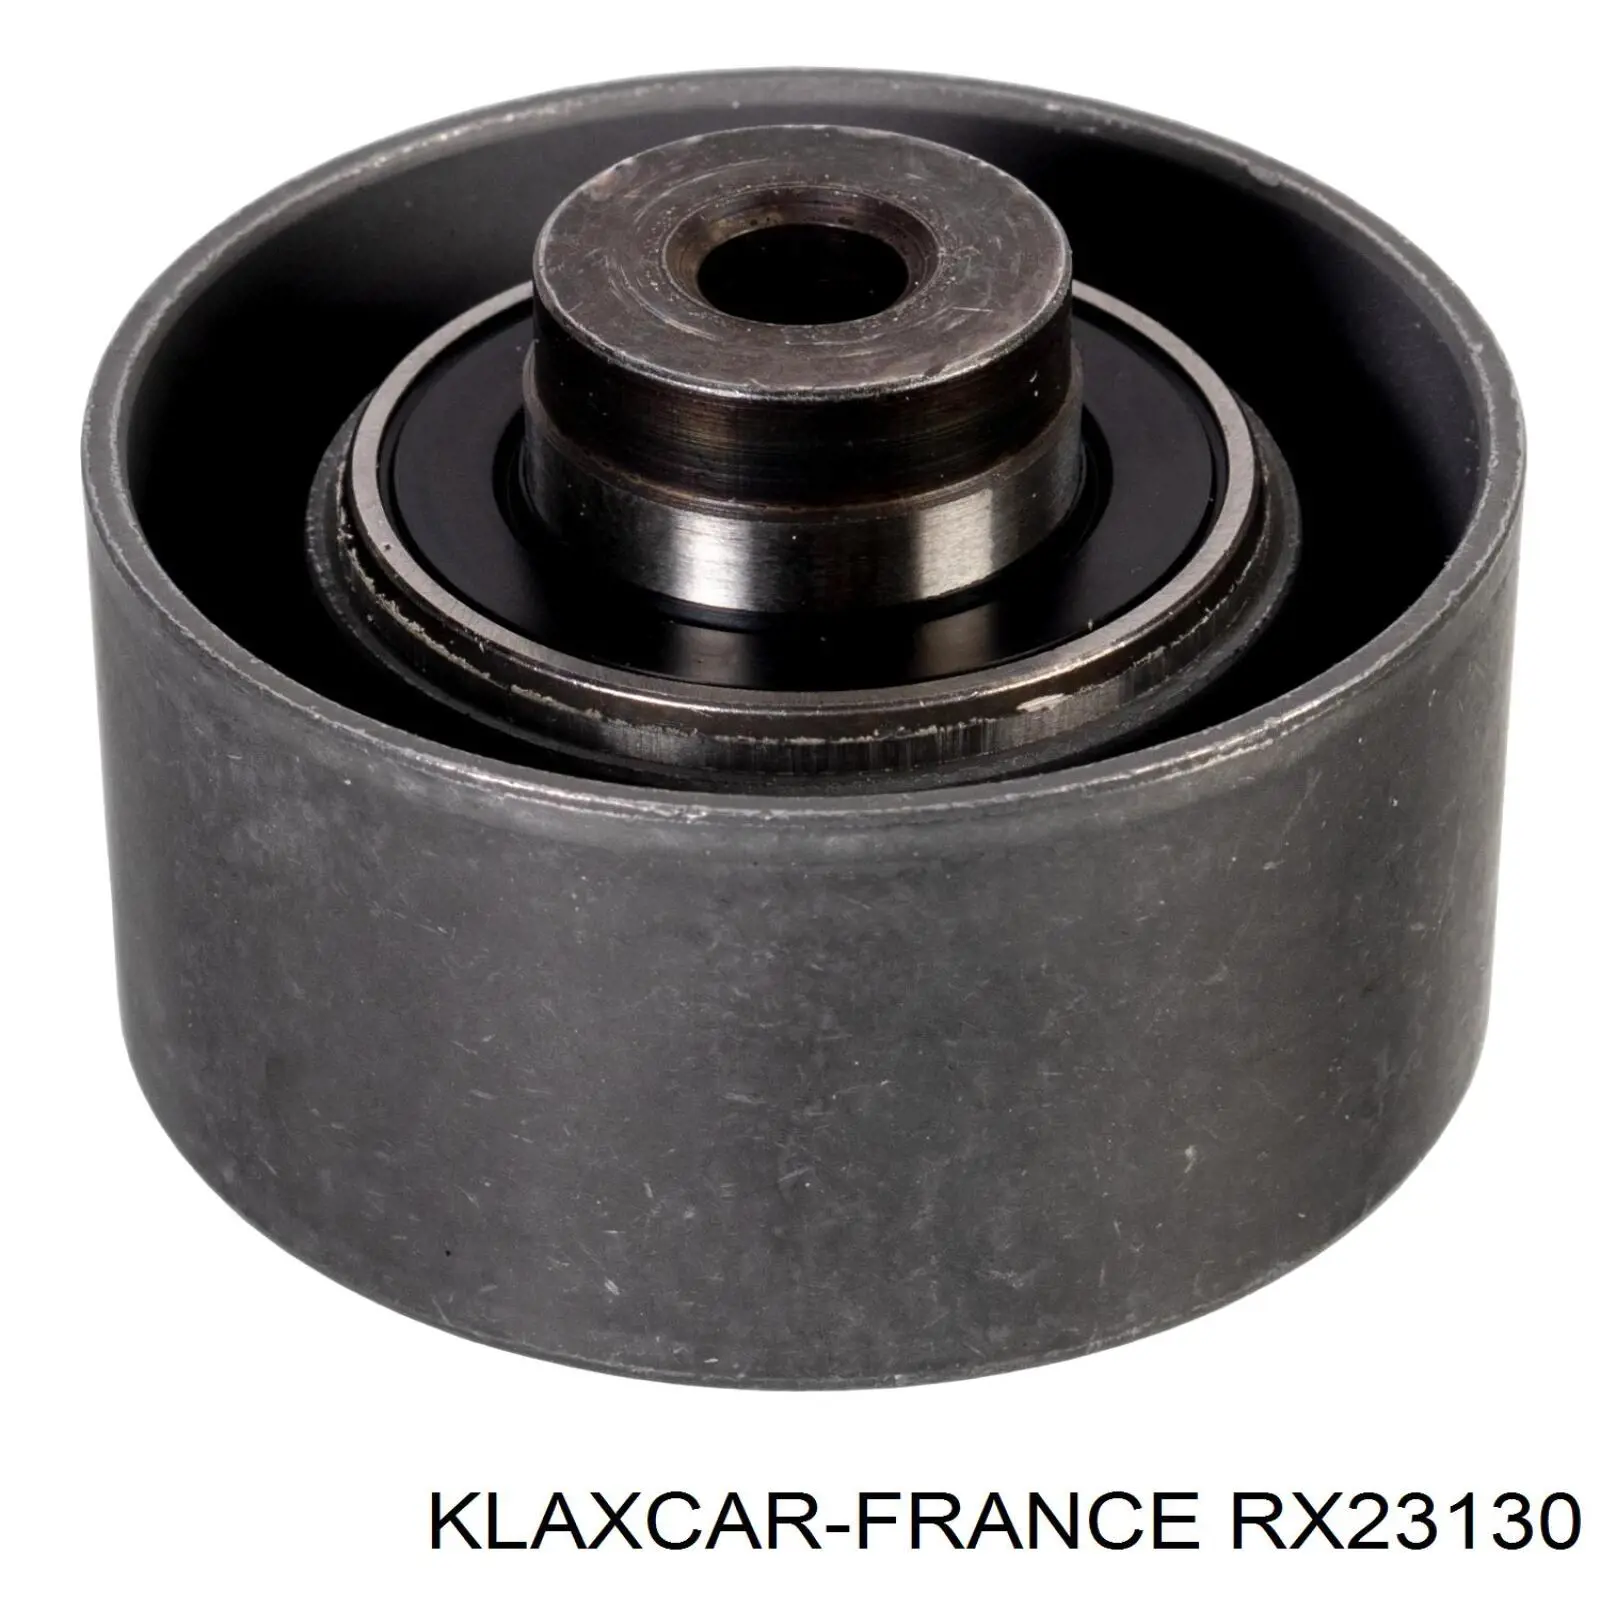 RX23130 Klaxcar France polea correa distribución